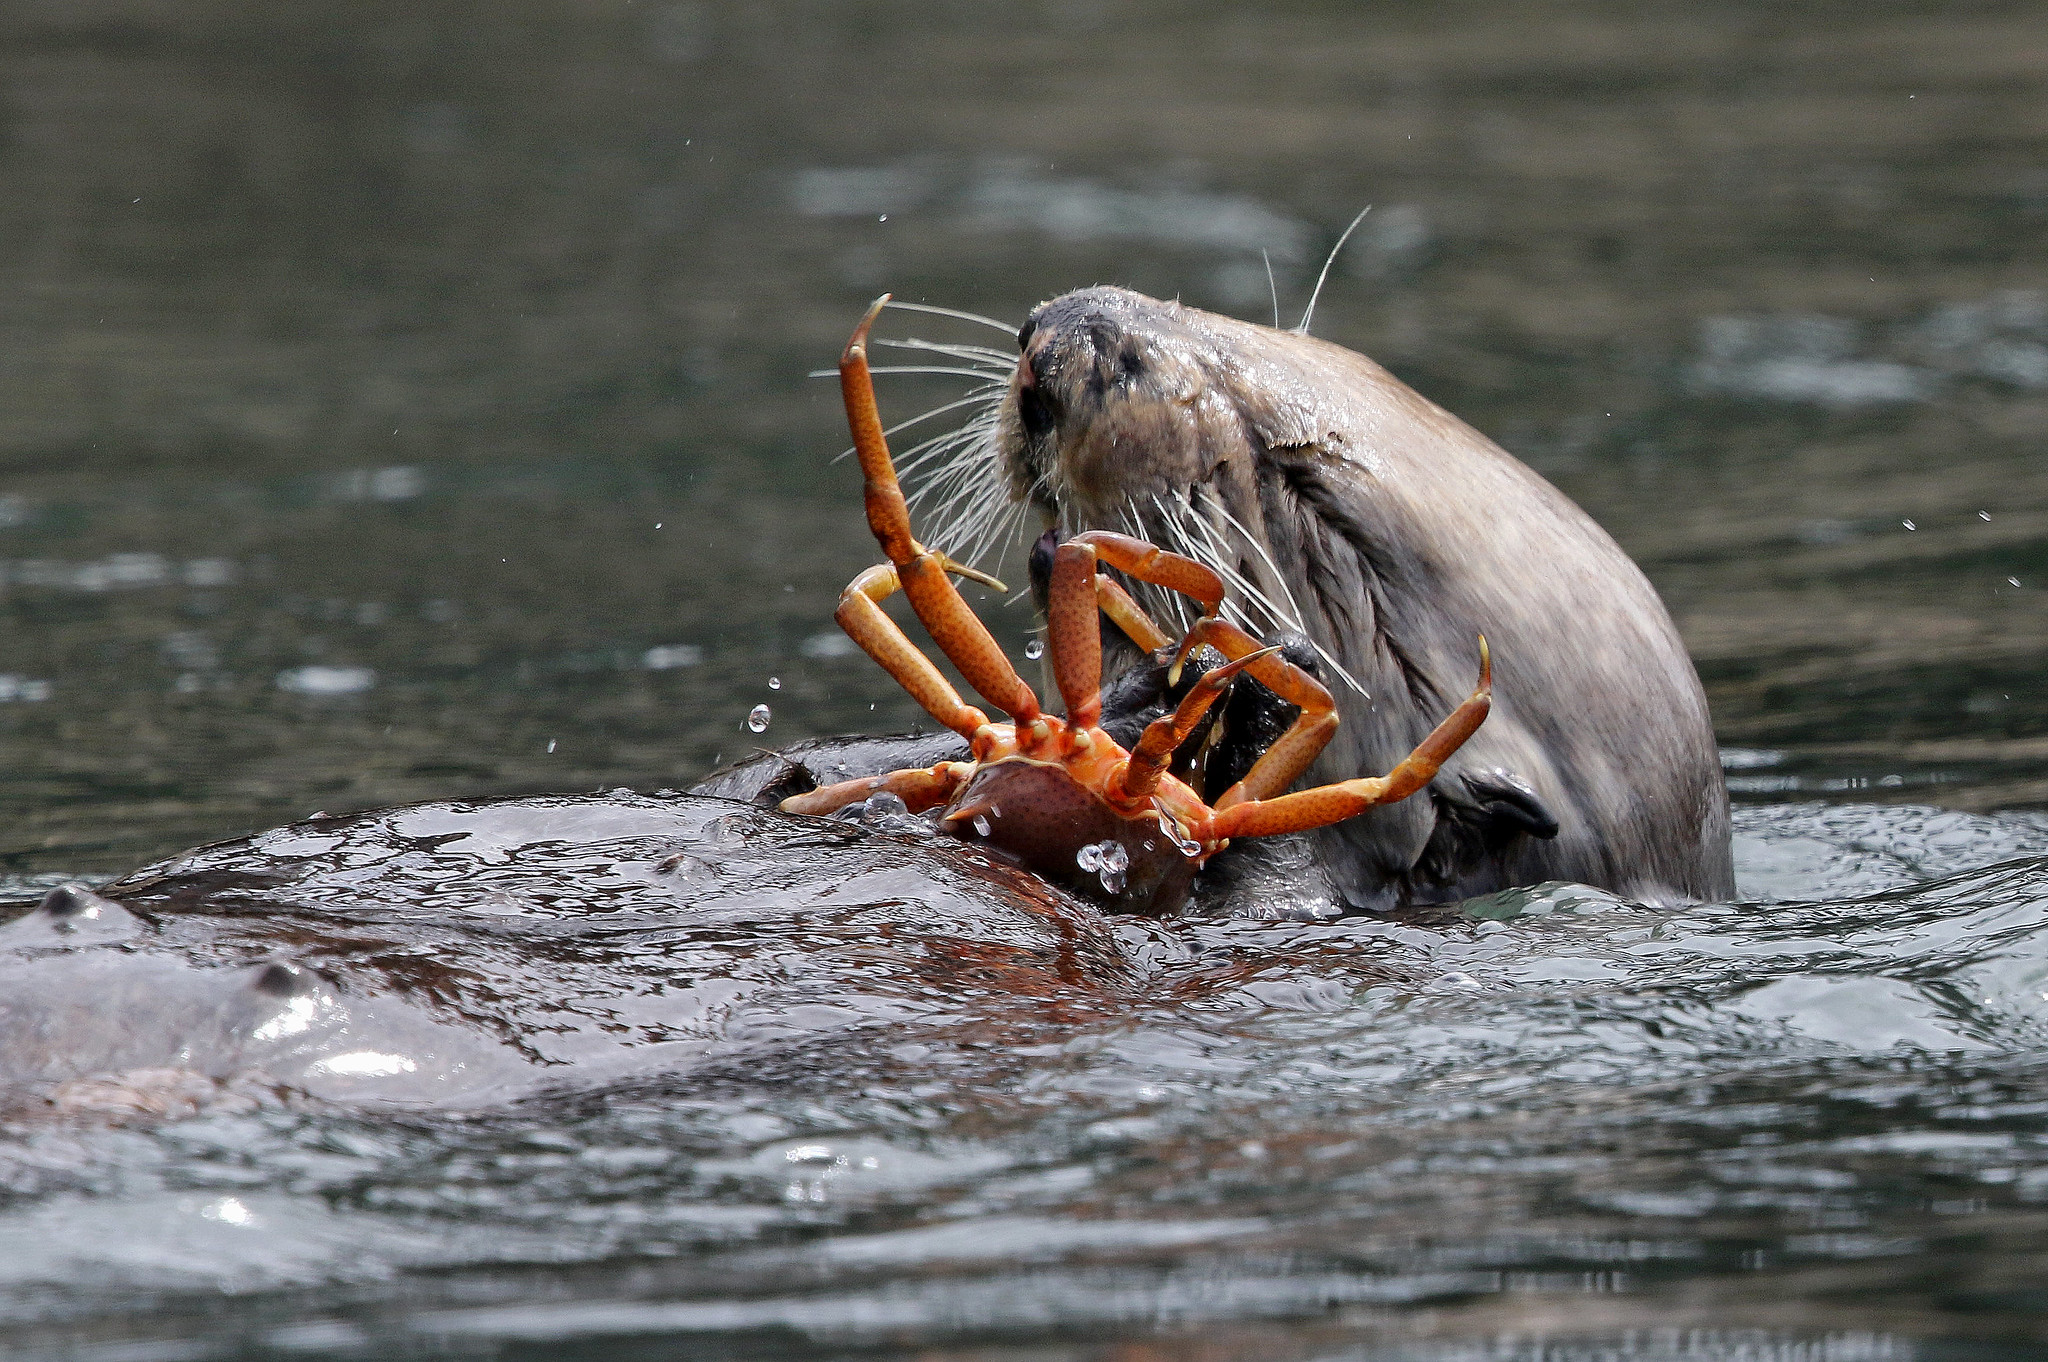 otter-eating-crab-photo-by-david-ledig-bureau-of-land-management.jpg